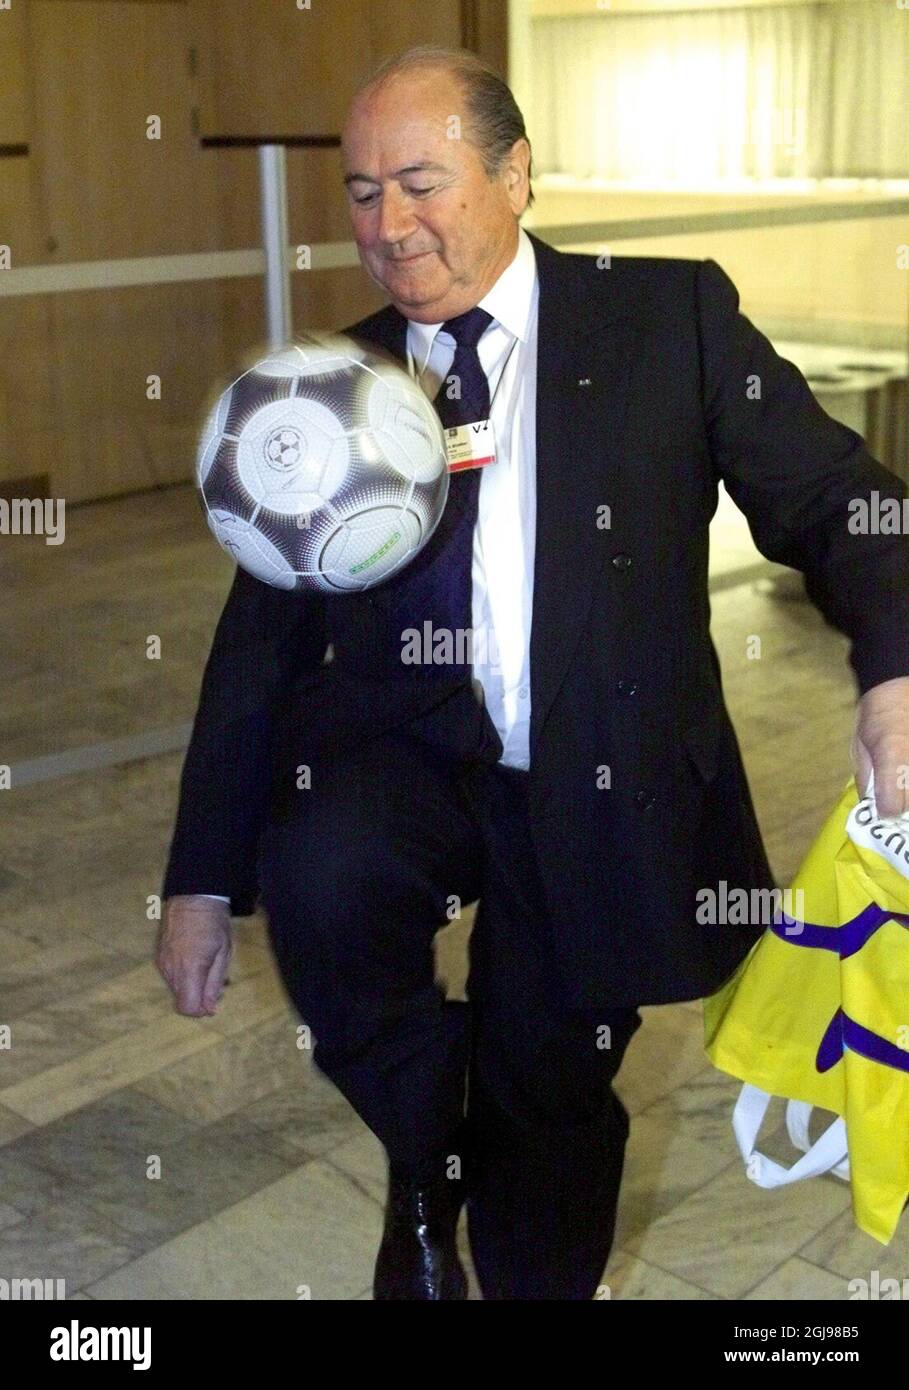 (DATEIEN) -- Ein Aktenfoto vom 24. März 2001 zeigt FIFA-Präsident Sepp Blatter beim Jonglieren mit einem Fußball, nachdem er am Rand des Gipfels der Europäischen Union in Stockholm eine Vereinbarung über das internationale Fußballübertragungssystem unterzeichnet hatte. Sepp Blatter trat am 2. Juni 2015 als Präsident der FIFA zurück, als ein sich weiter anspannender Korruptionsskandal das Weltfußballgremium verschlang. Der 79-jährige Schweizer Funktionär, der seit 17 Jahren FIFA-Präsident ist und erst am 29. Mai wiedergewählt wurde, sagte, dass ein Sonderkongress zur Wahl eines Nachfolgers aufgerufen werde. FOTO/ SCANPIX SCHWEDEN / HENRIK MONTGOMERY Stockfoto